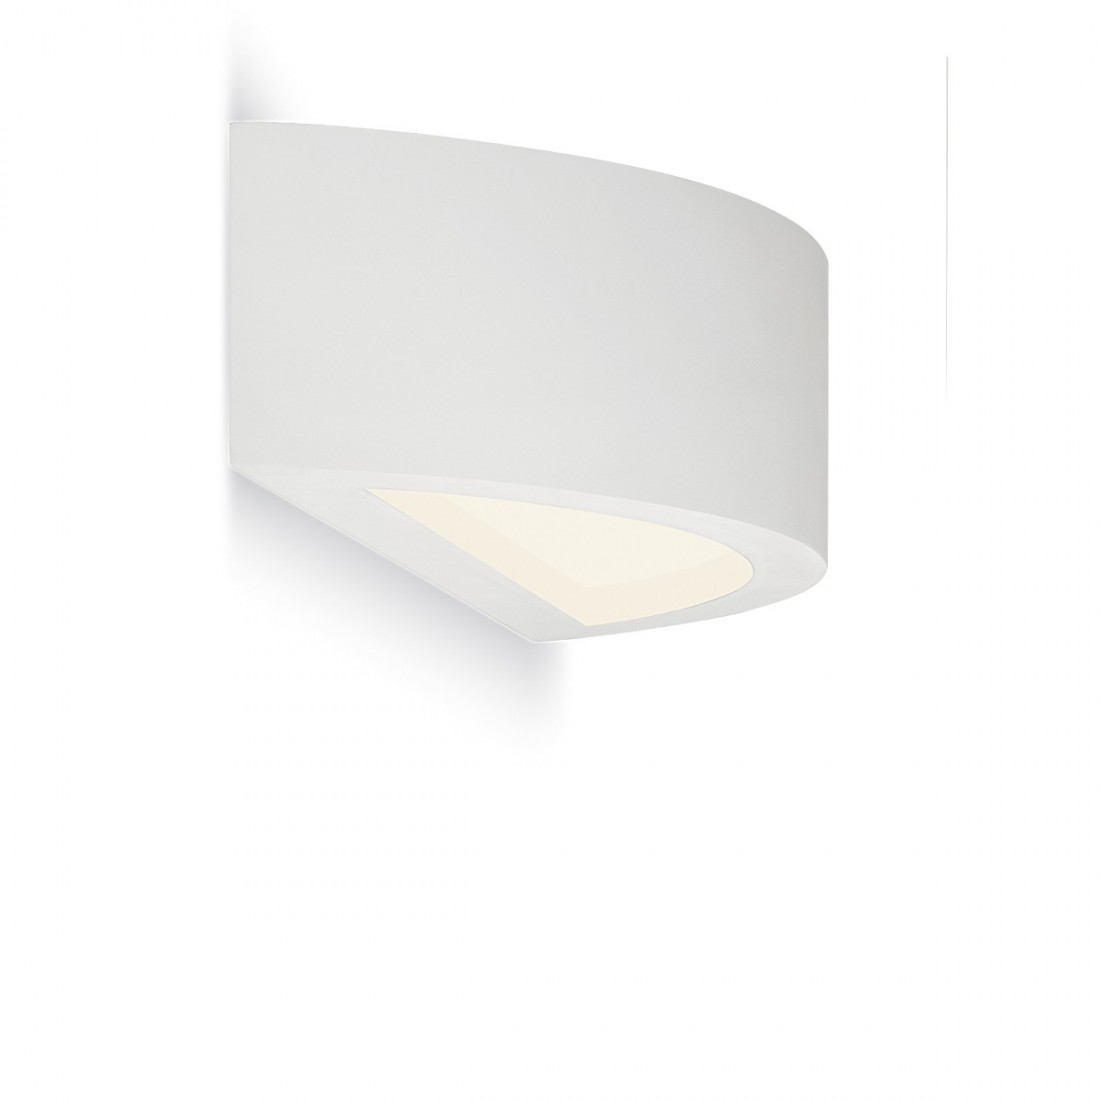 PN-BOREALE PAR310 E14 LED plâtre blanc à peindre bi-émission verre lampe mur intérieur IP20